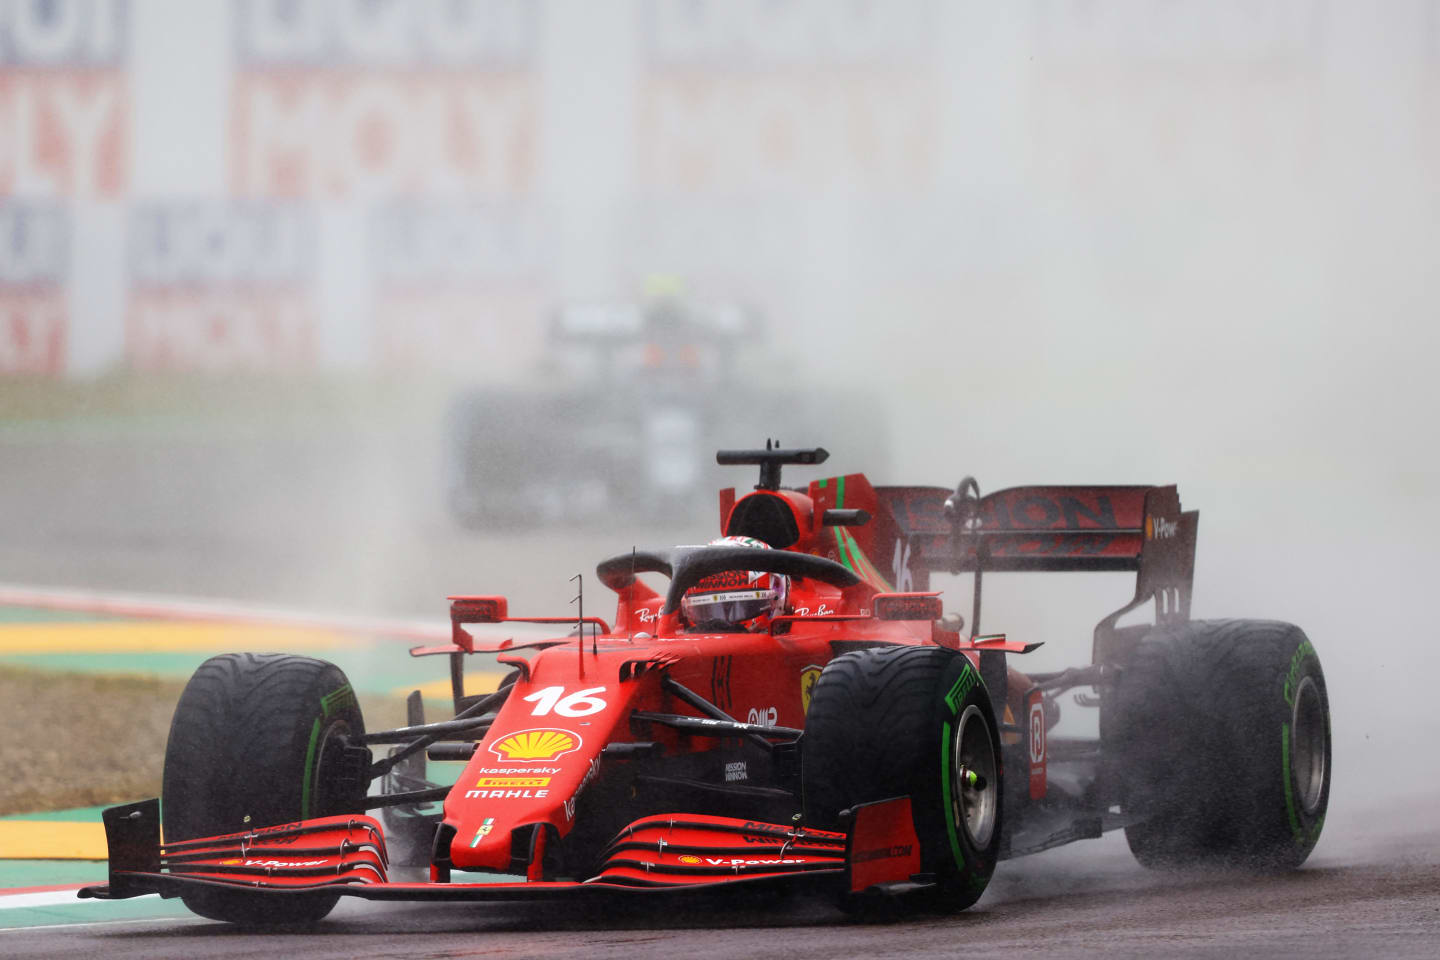 IMOLA, ITALY - APRIL 18: Charles Leclerc of Monaco driving the (16) Scuderia Ferrari SF21 on track